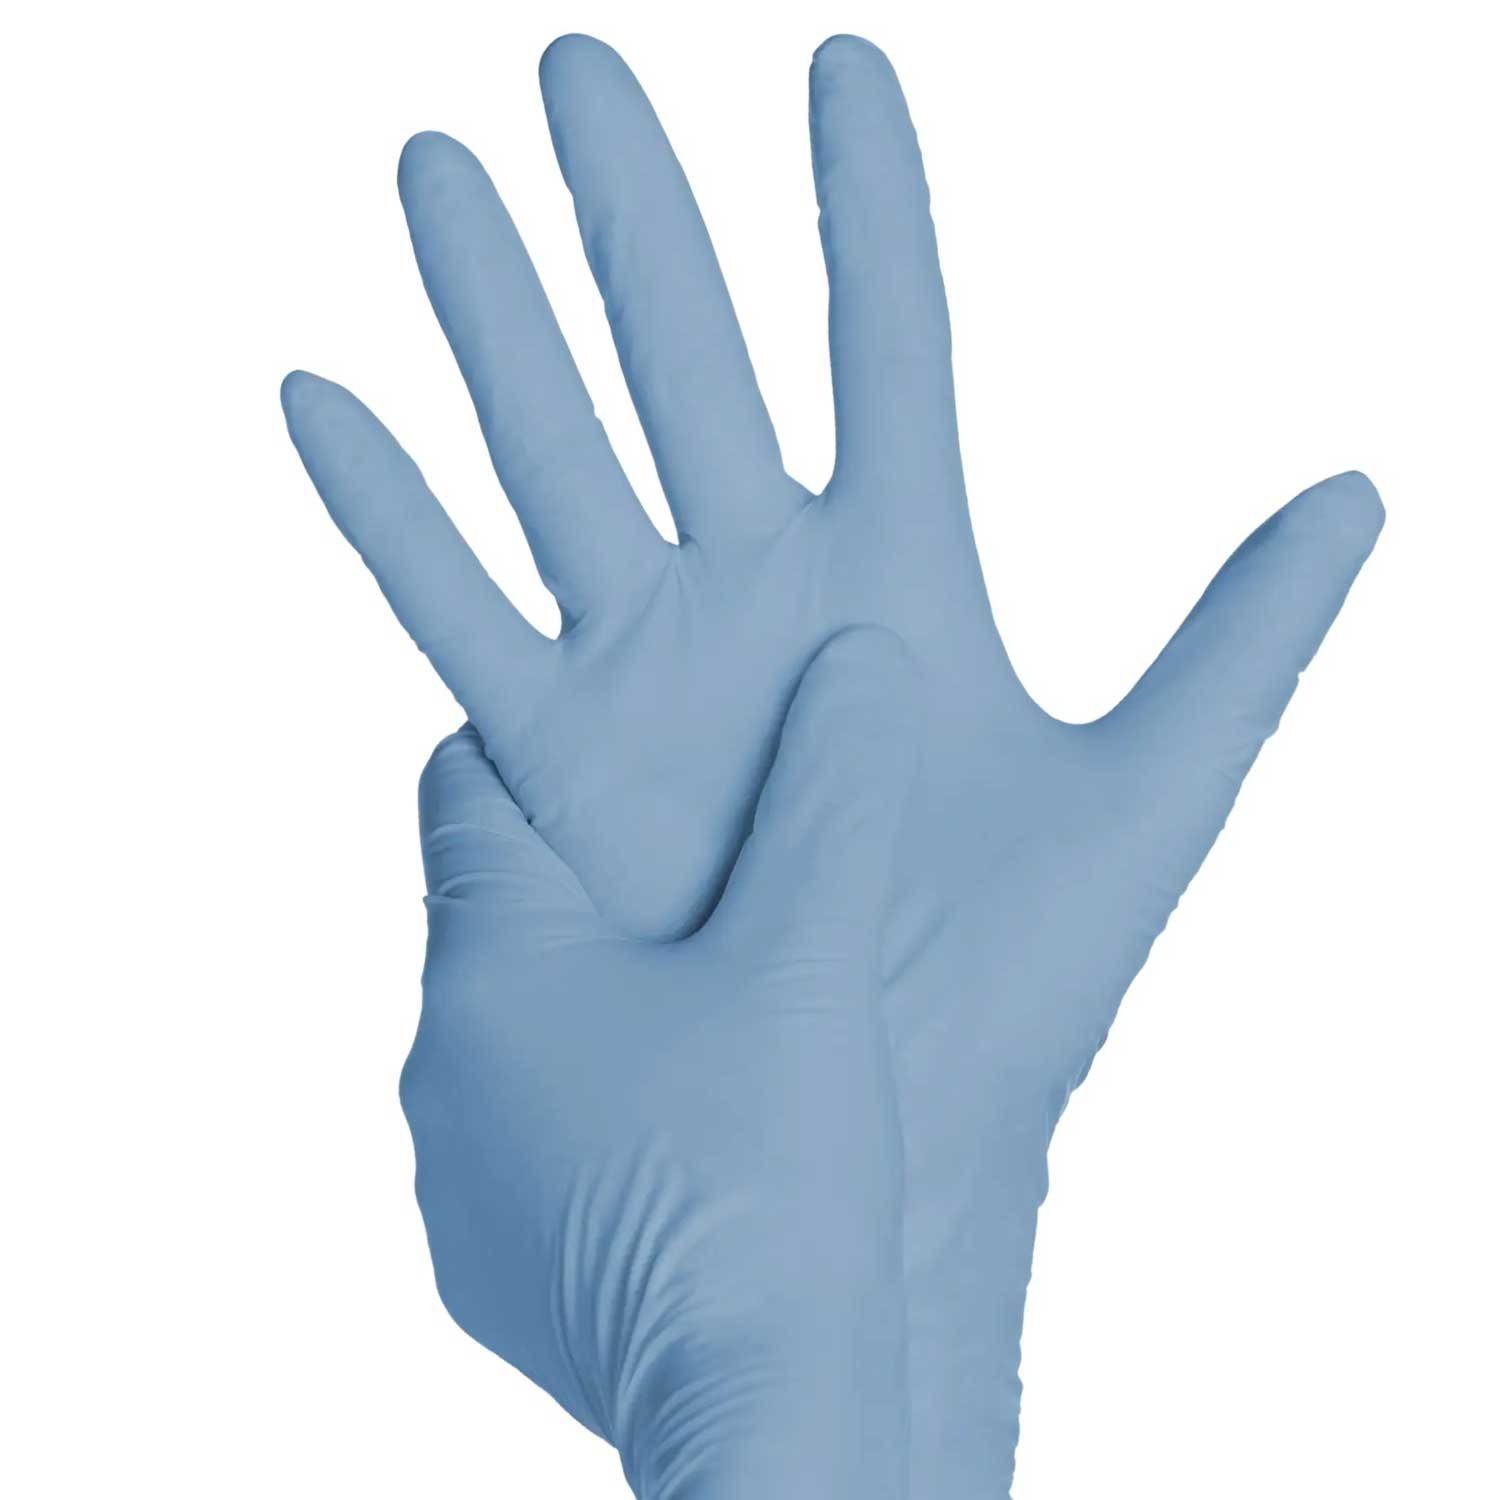 AMPri Nitril-Handschuhe Pura und Bakterien Comfort Untersuchungshandschuh KARTON Pilze S gegen Viren, Biologischer Nitril Größe Schutz Blue